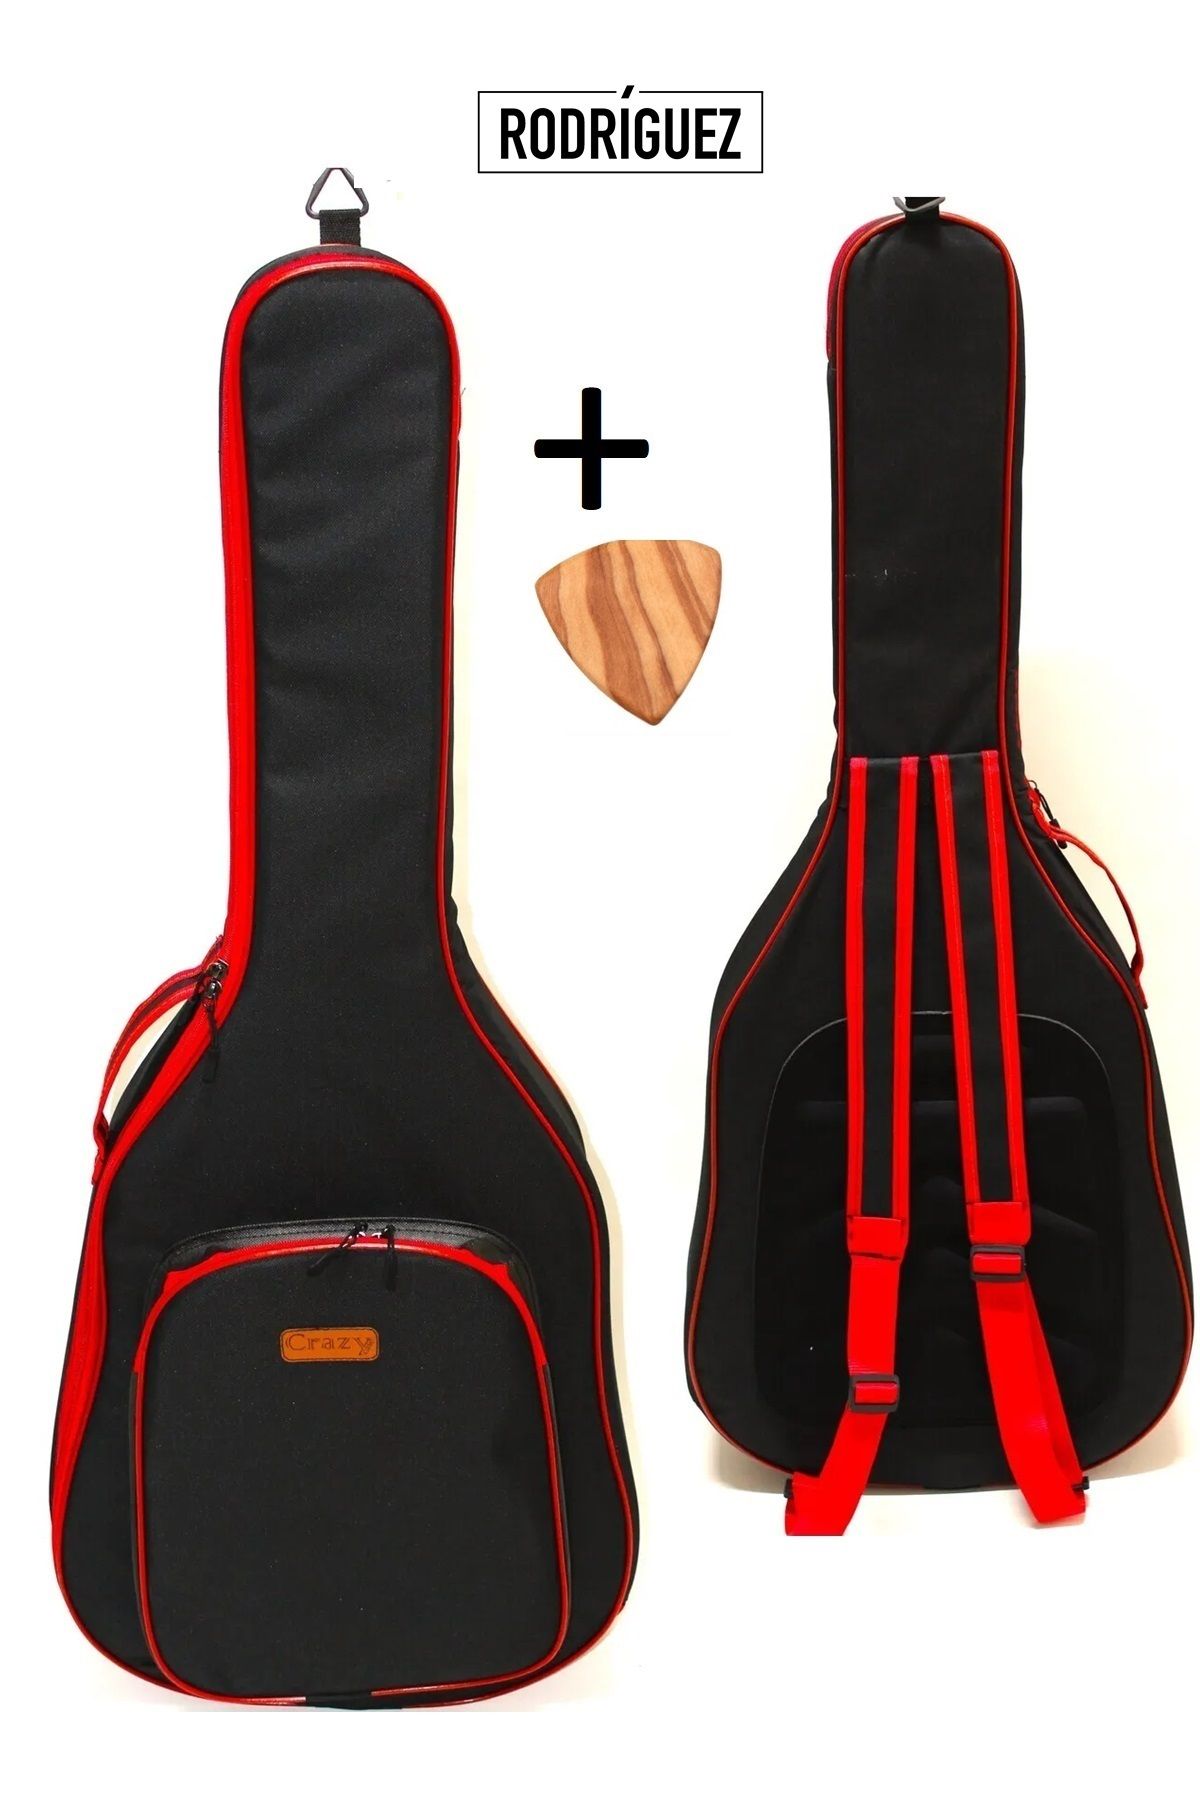 Rodriguez Özel Tasarım Yamaha Uyumlu Akustik Gitar Kılıfı Gri Taşıma Çantası Gigbag Softcase + Ahşap Pena